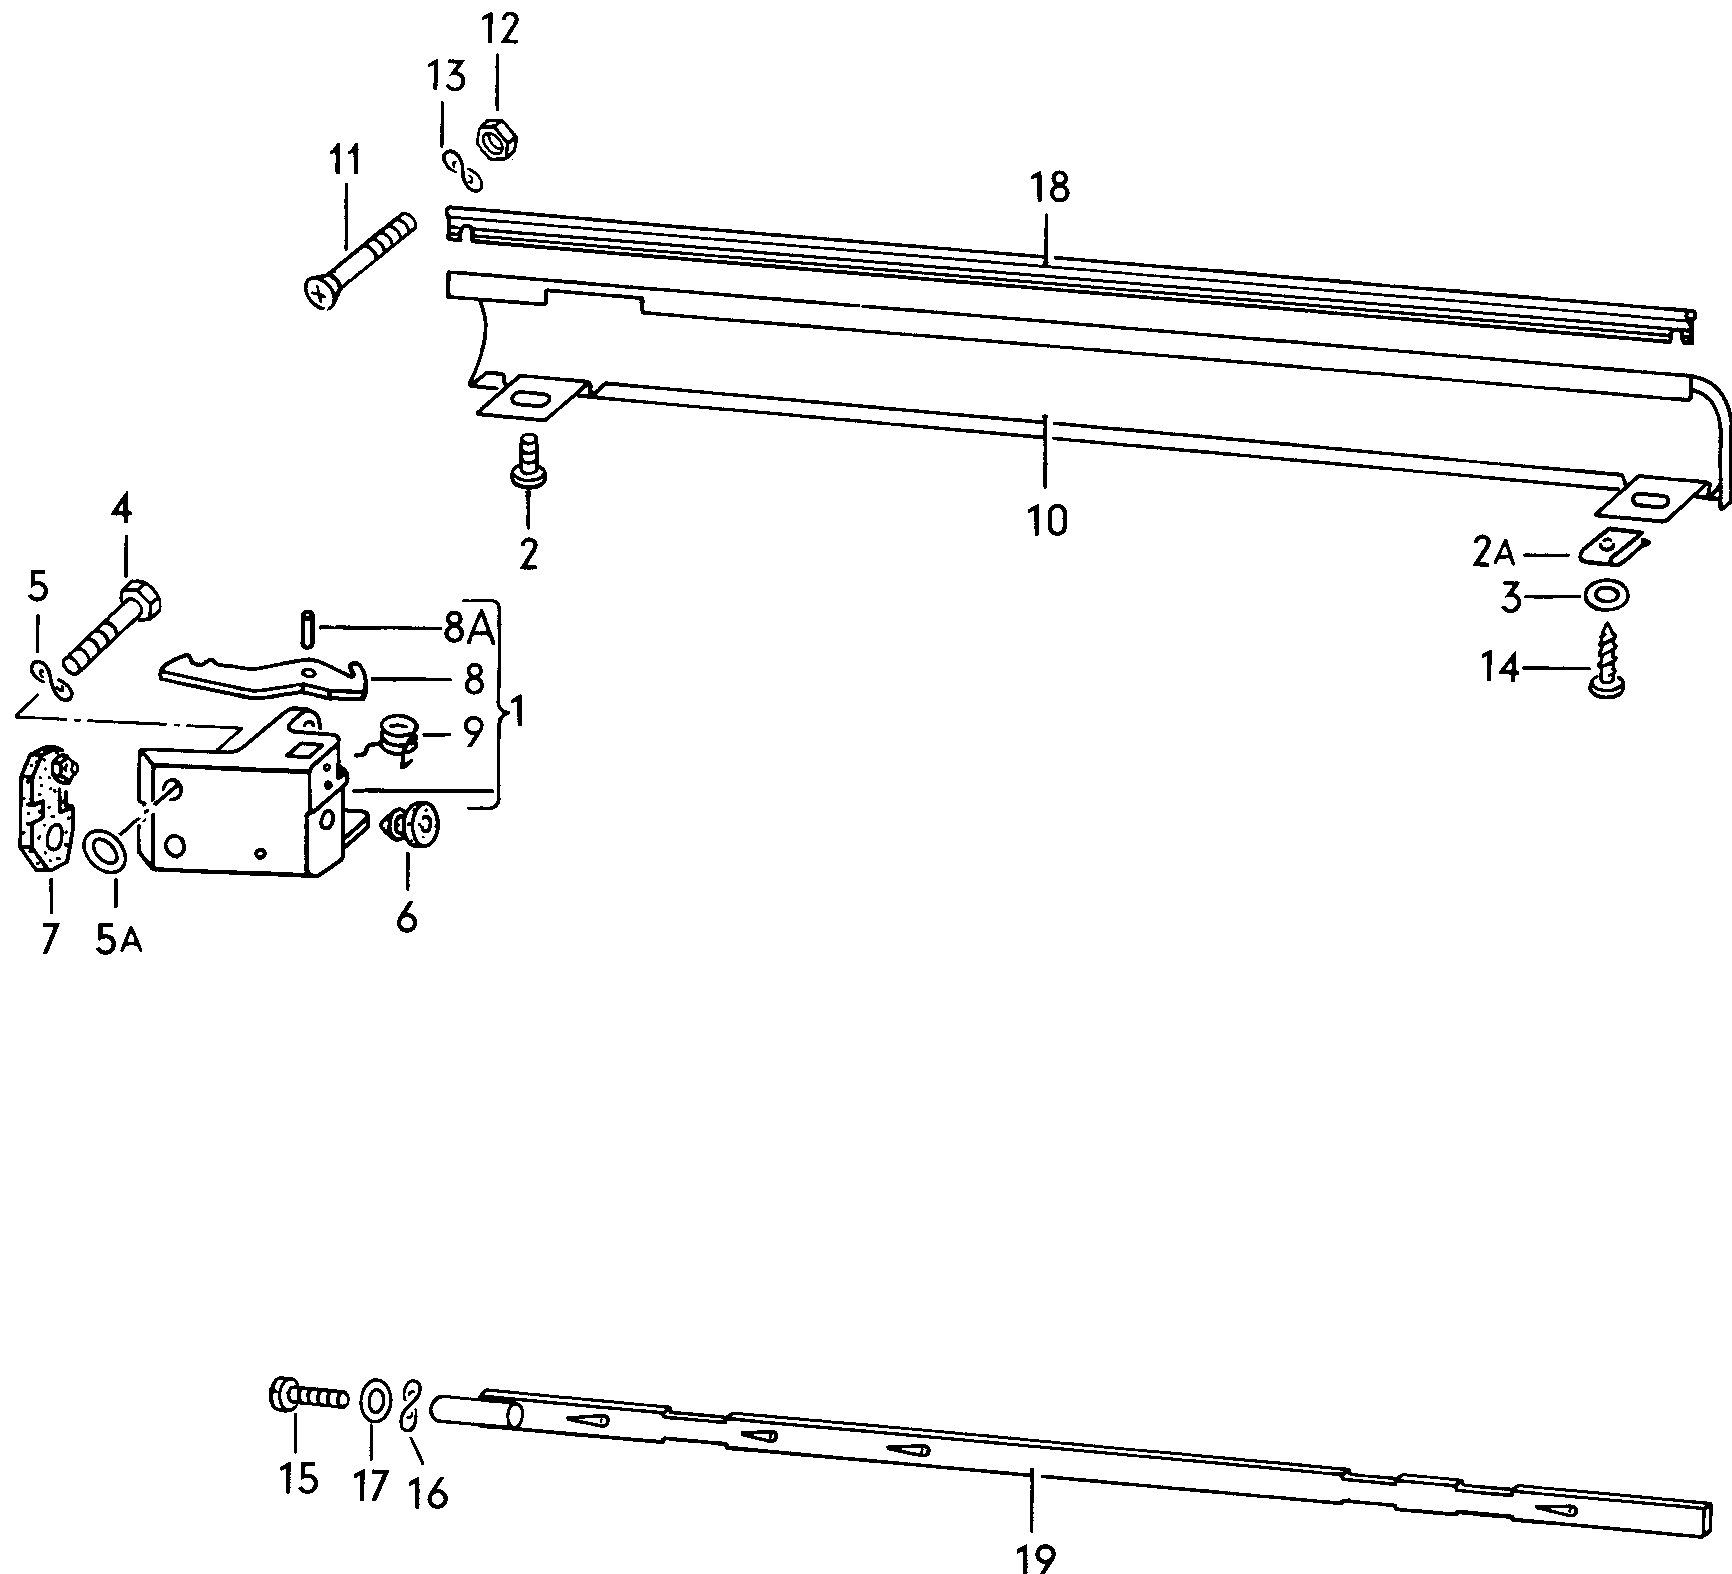 SchliessbockAbdeckung für Seitenteil  - Typ 2/syncro - t2